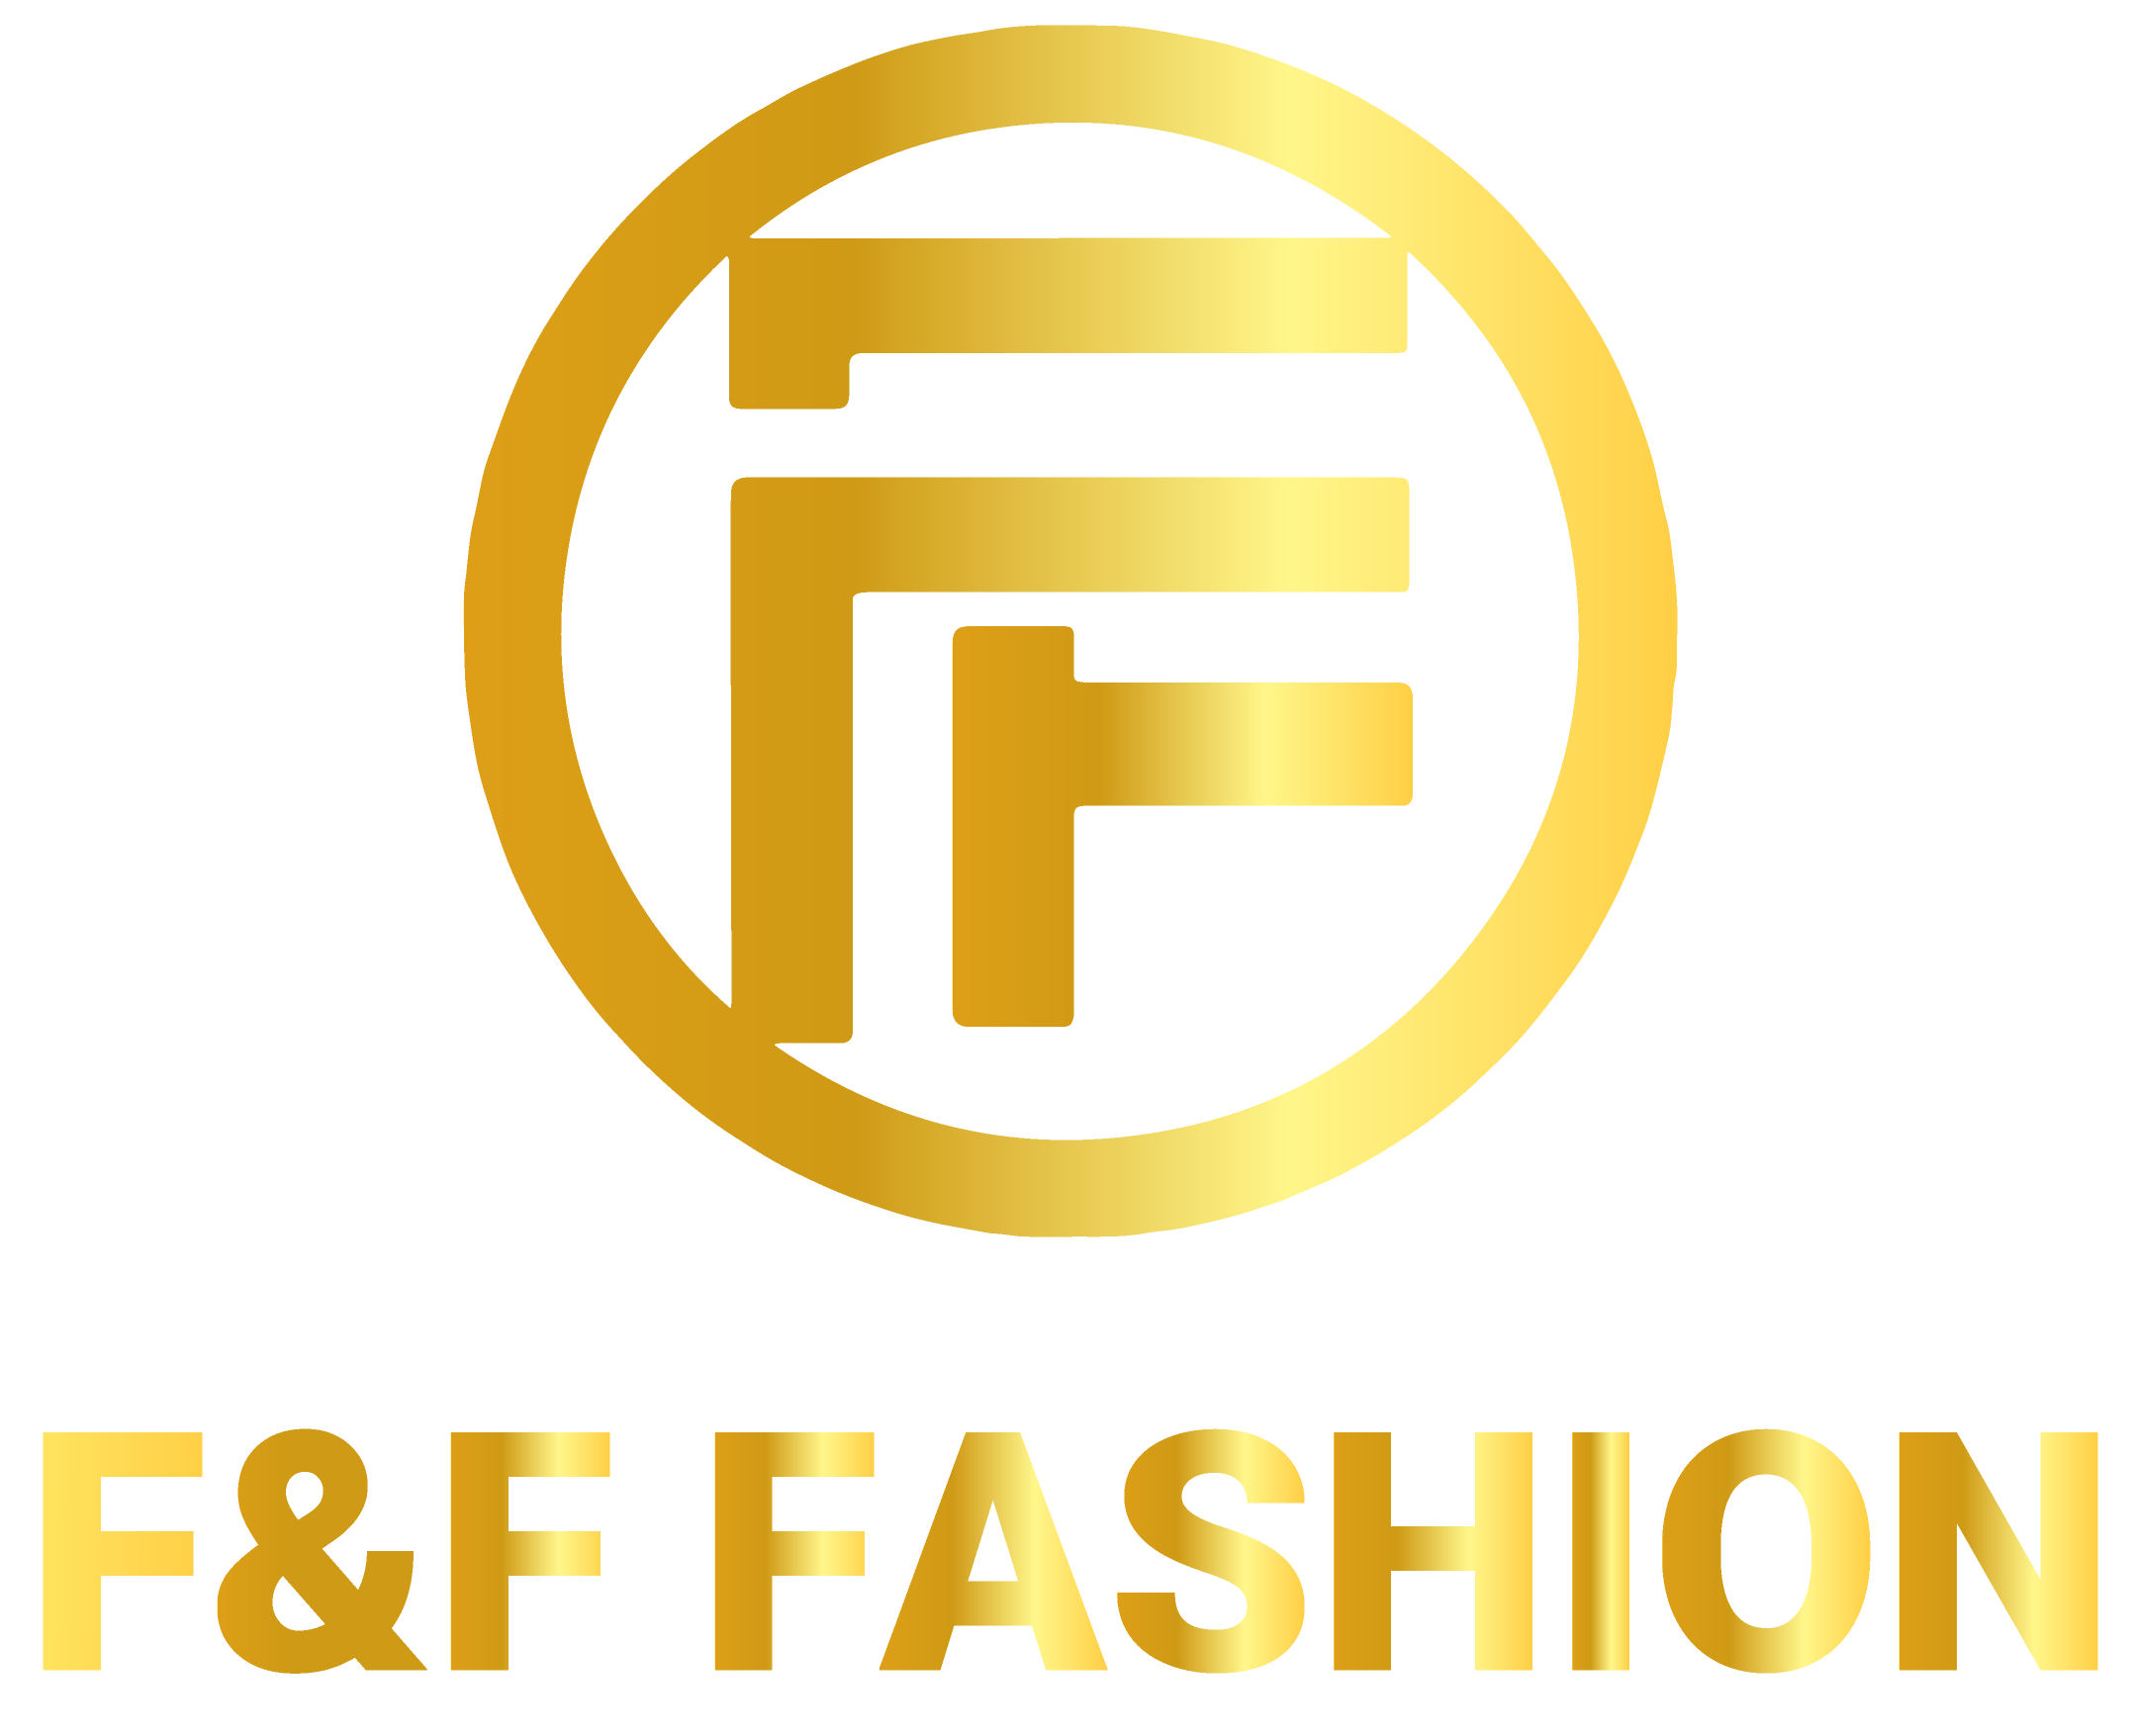 F & F Fashion